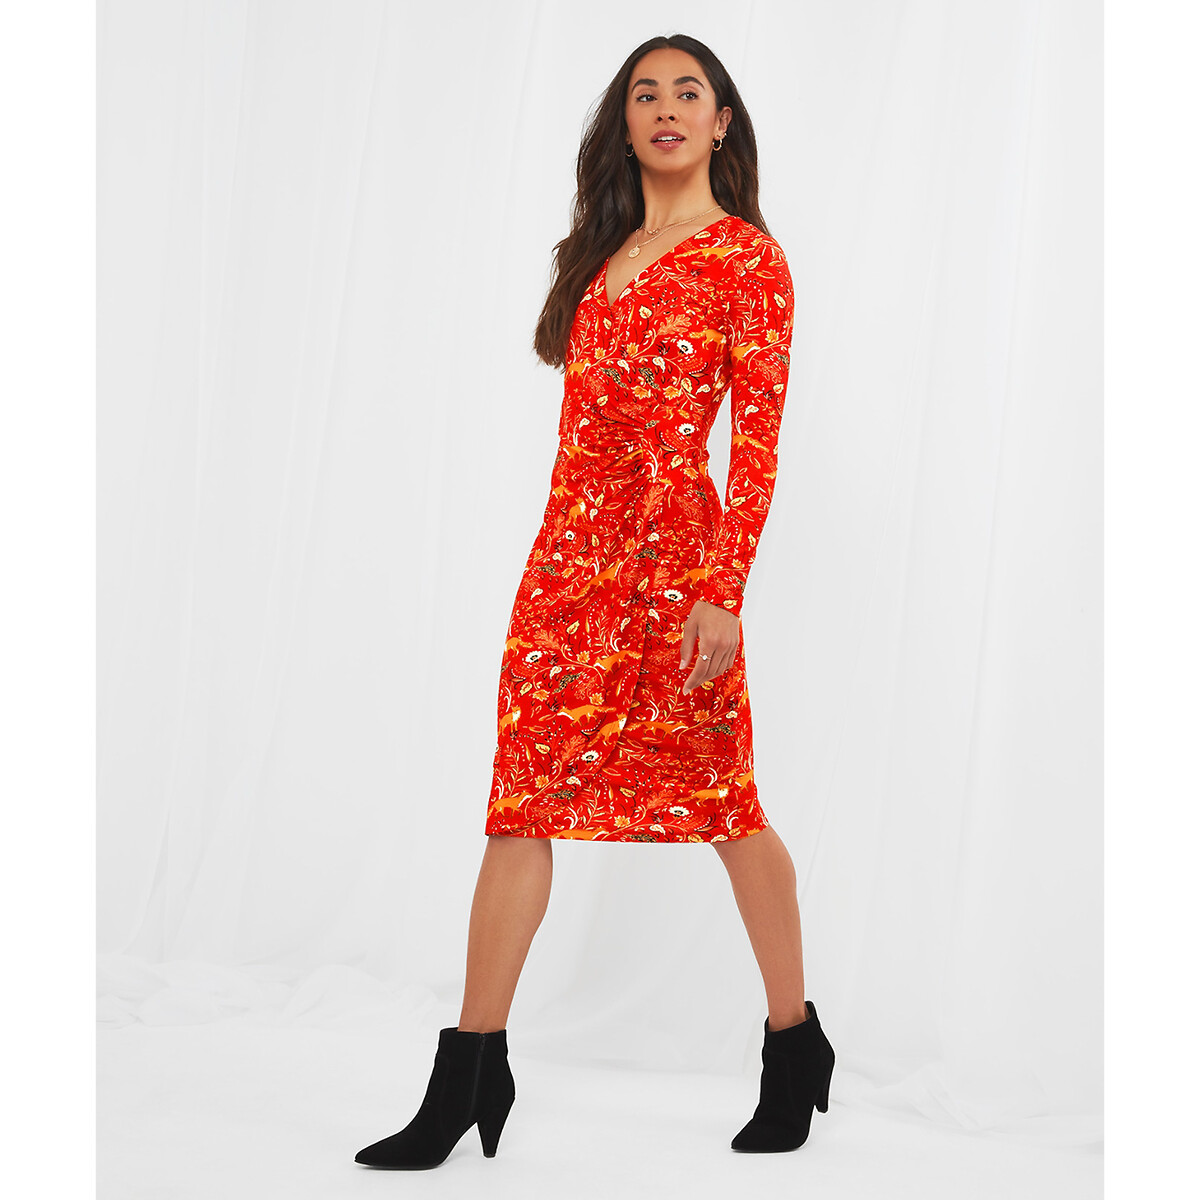 Платье JOE BROWNS Платье Длинное с запахом и принтом 44 красный, размер 44 - фото 1